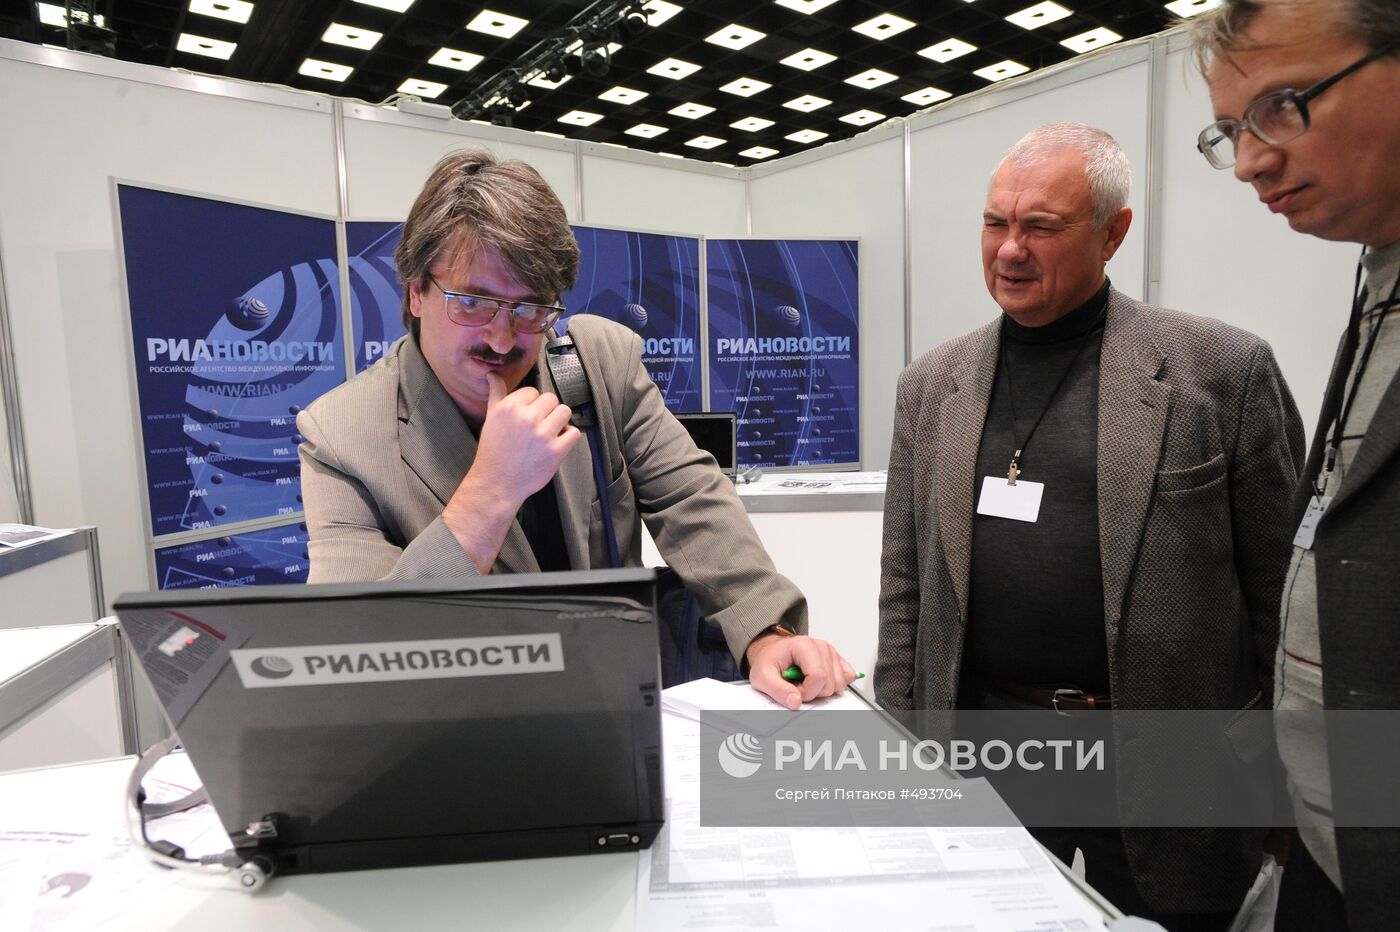 Форум российских издателей "Издательский бизнес-2009"